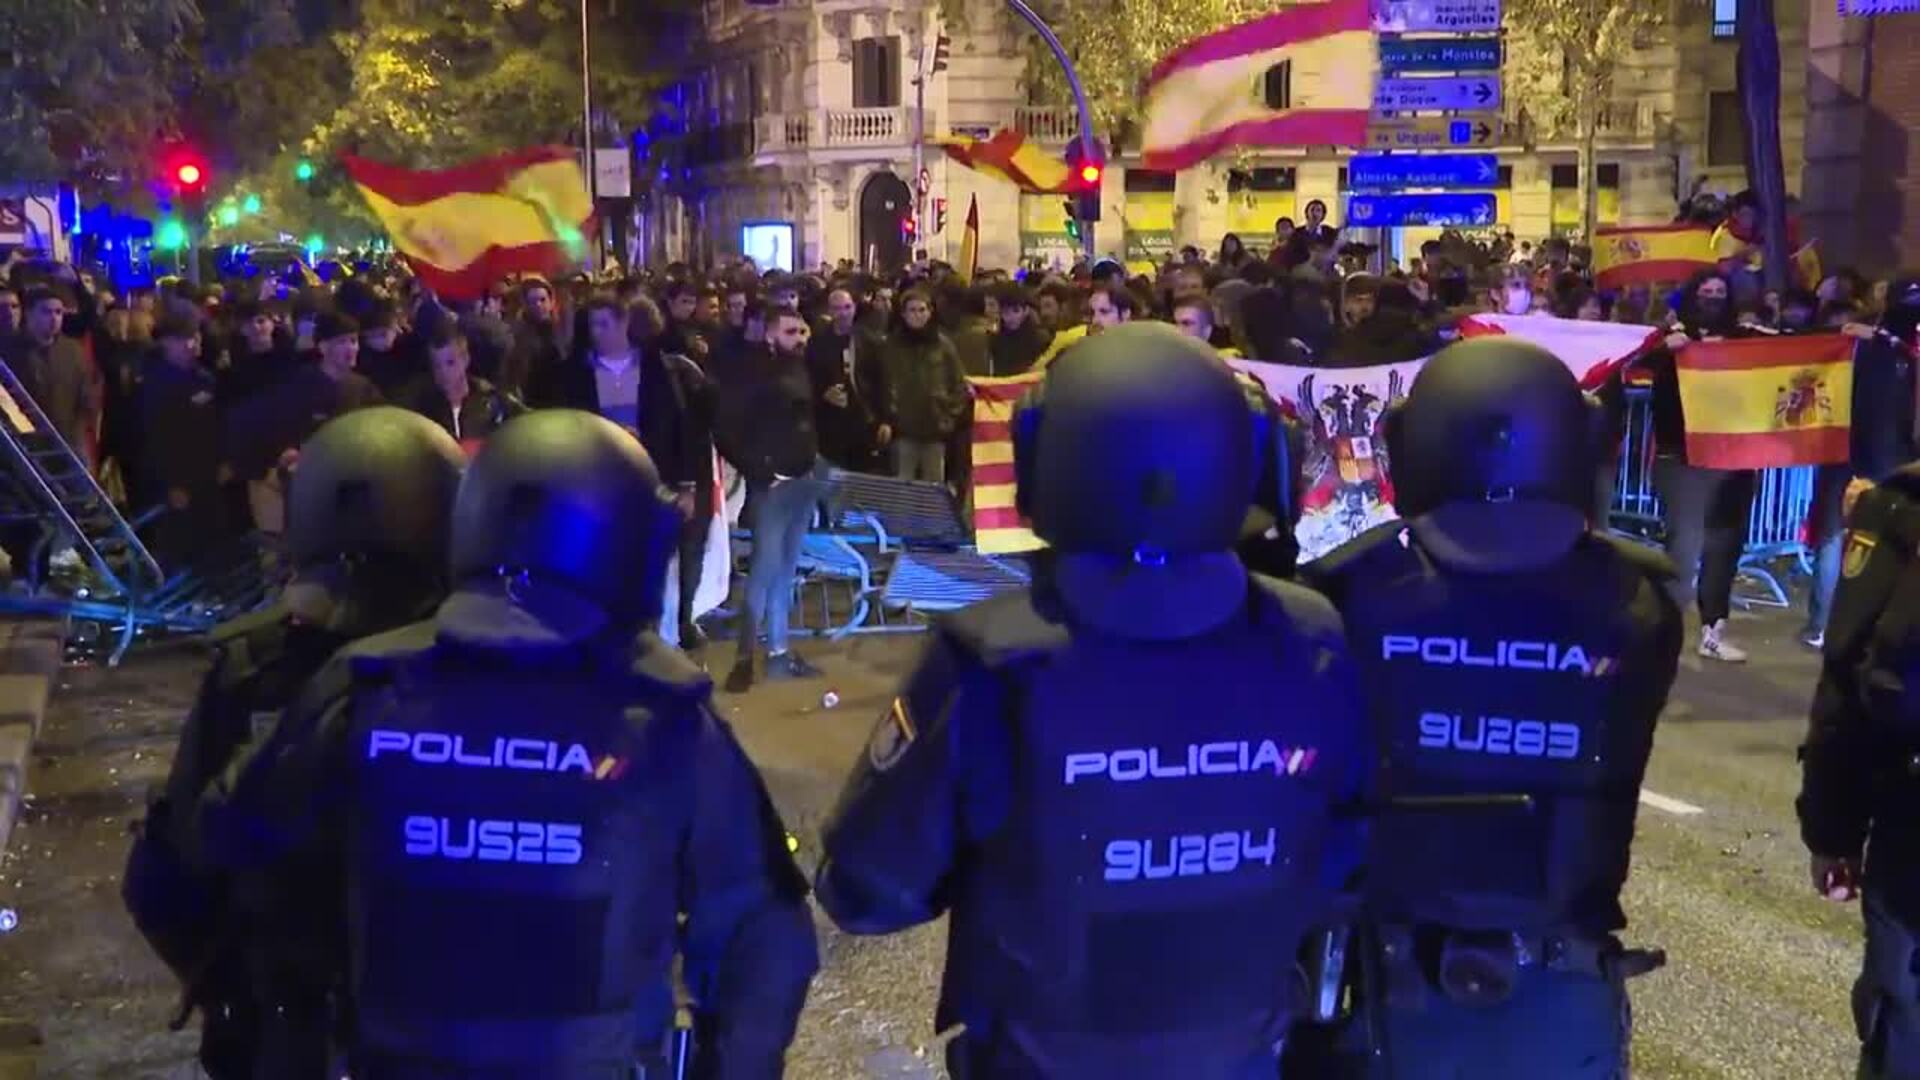 Los manifestantes abandonan Ferraz tras breves momentos de tensión con cargas policiales